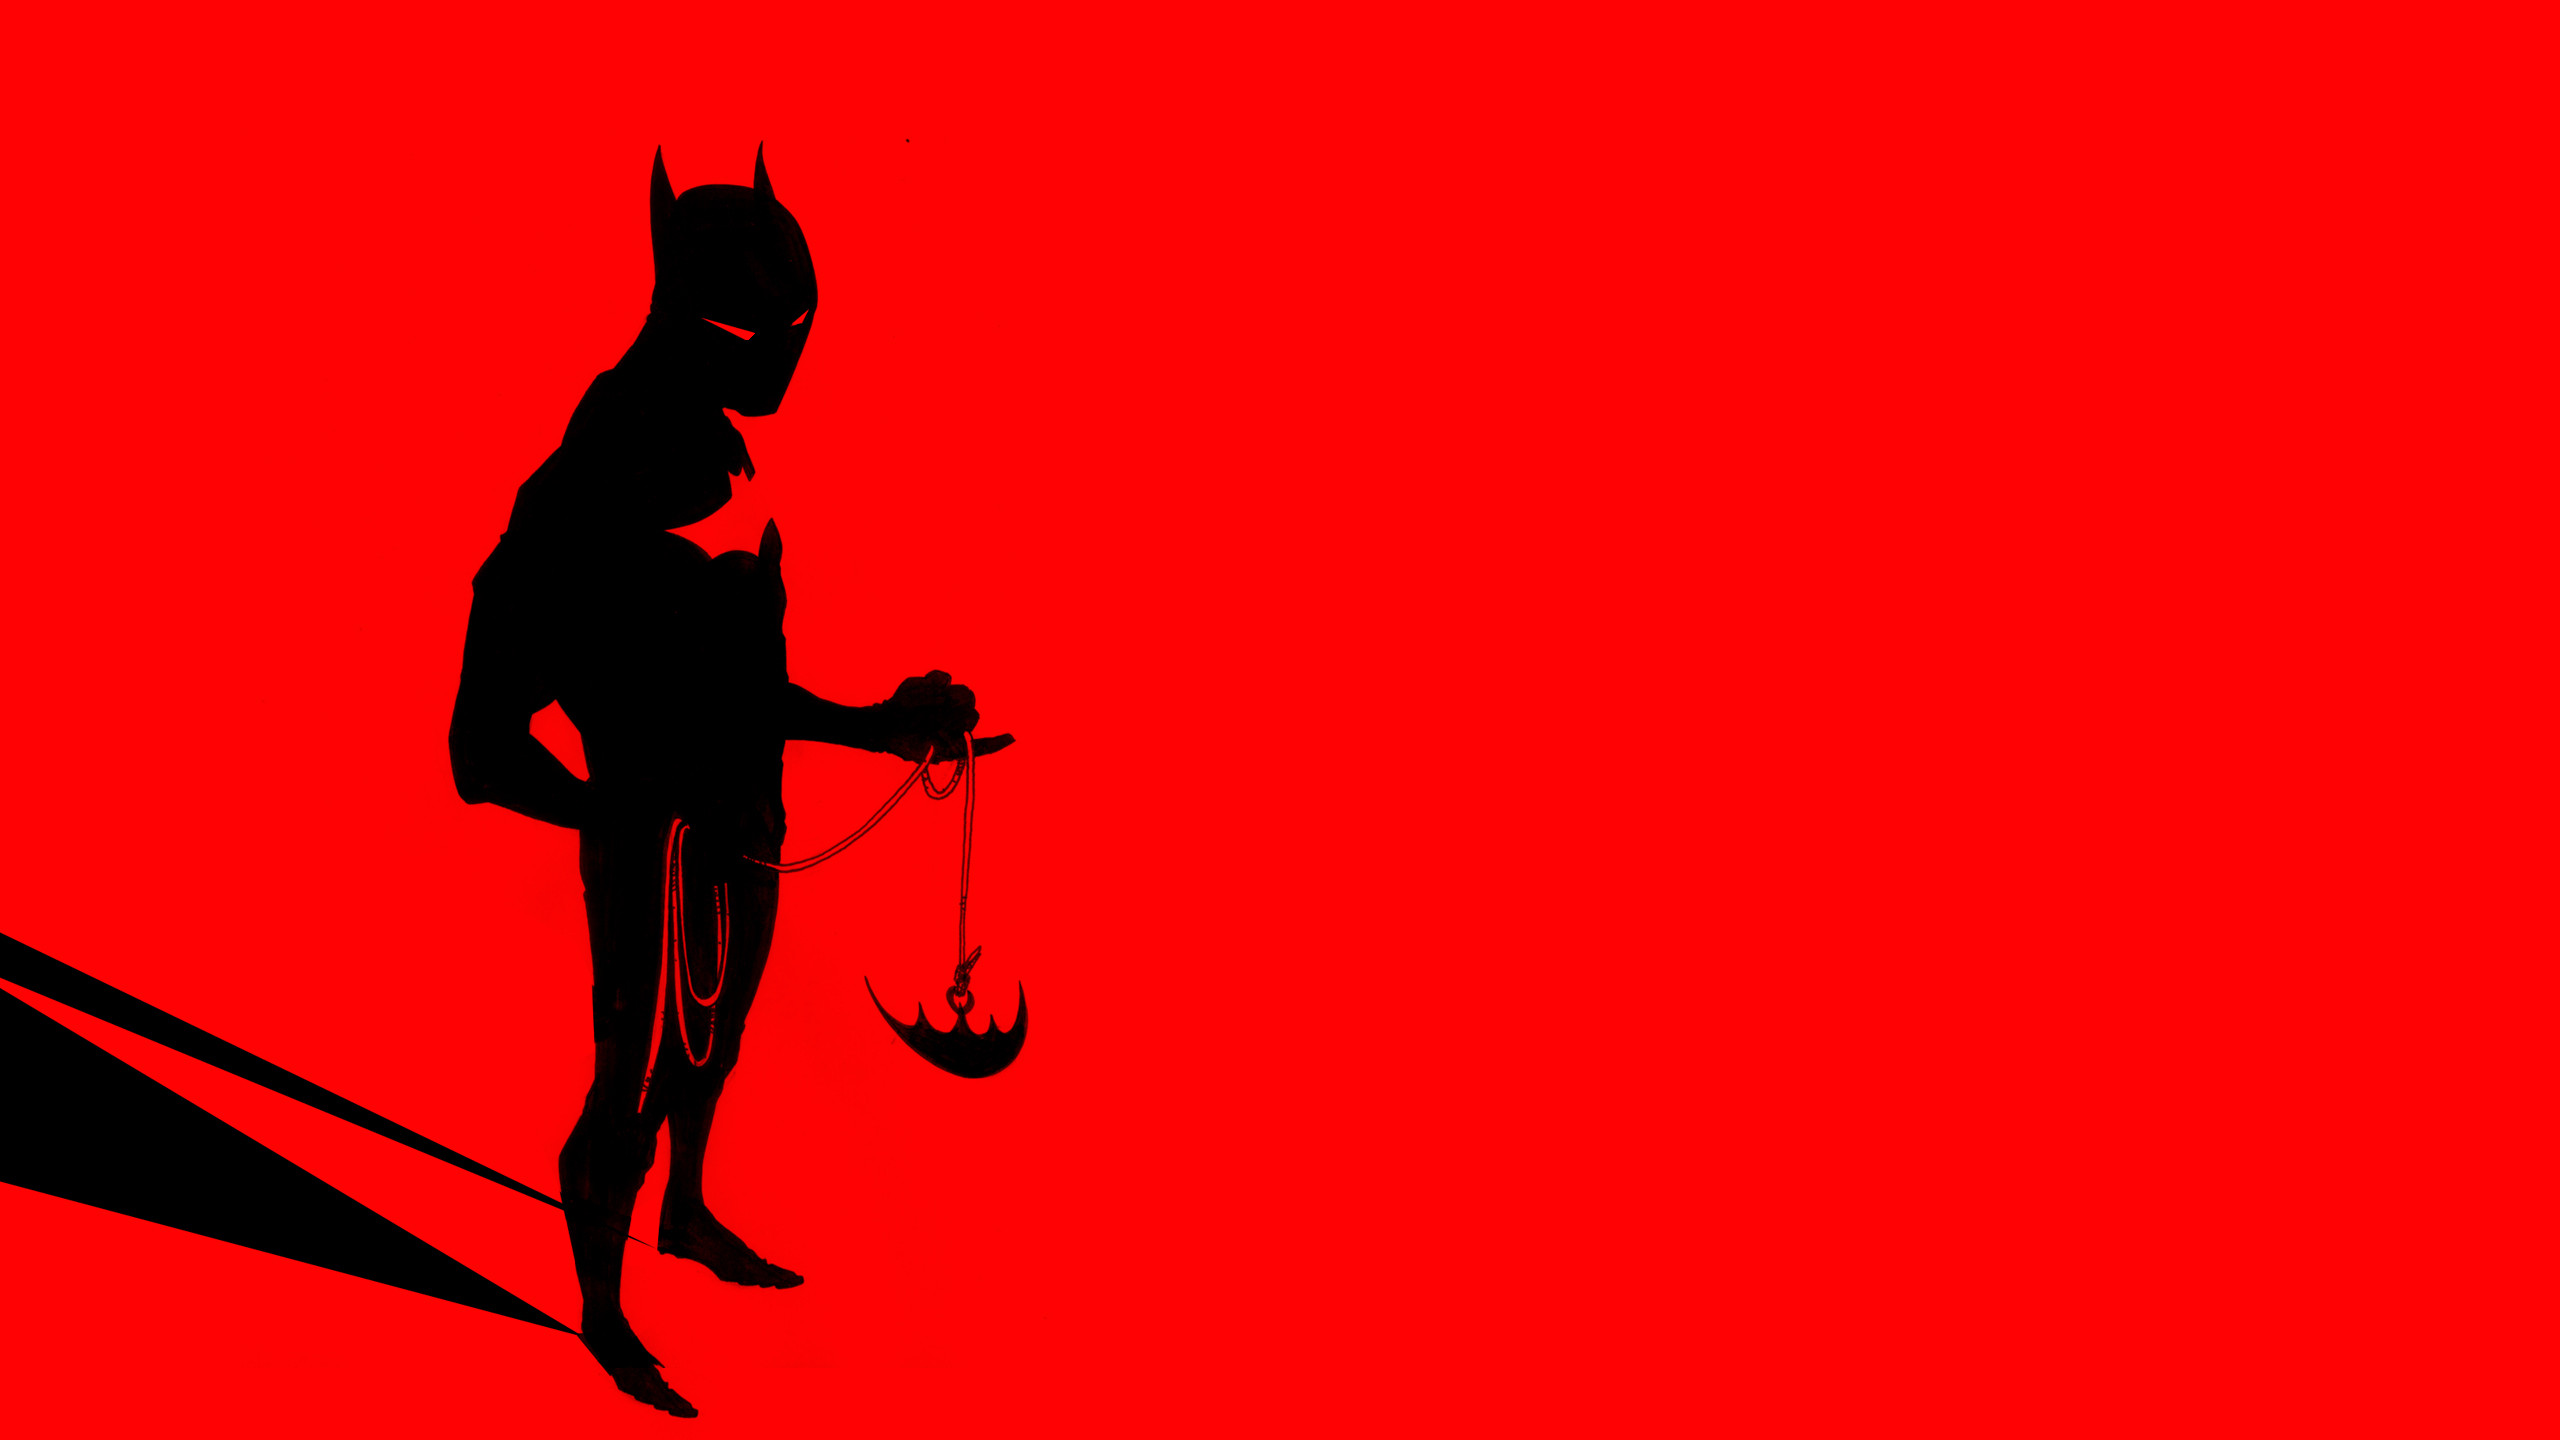 Batman Beyond Puter Wallpaper Desktop Background